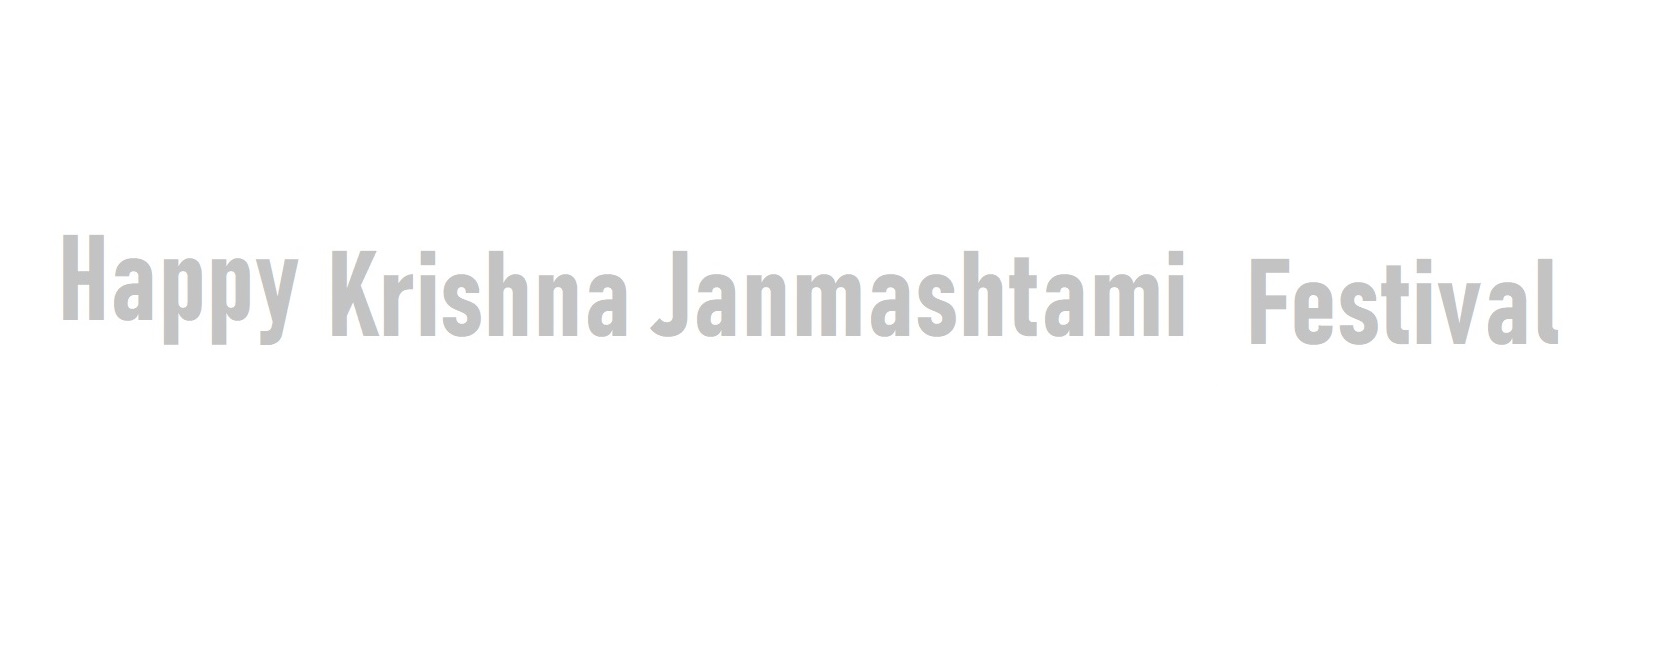 Krishna Janmashtami Festival Tour